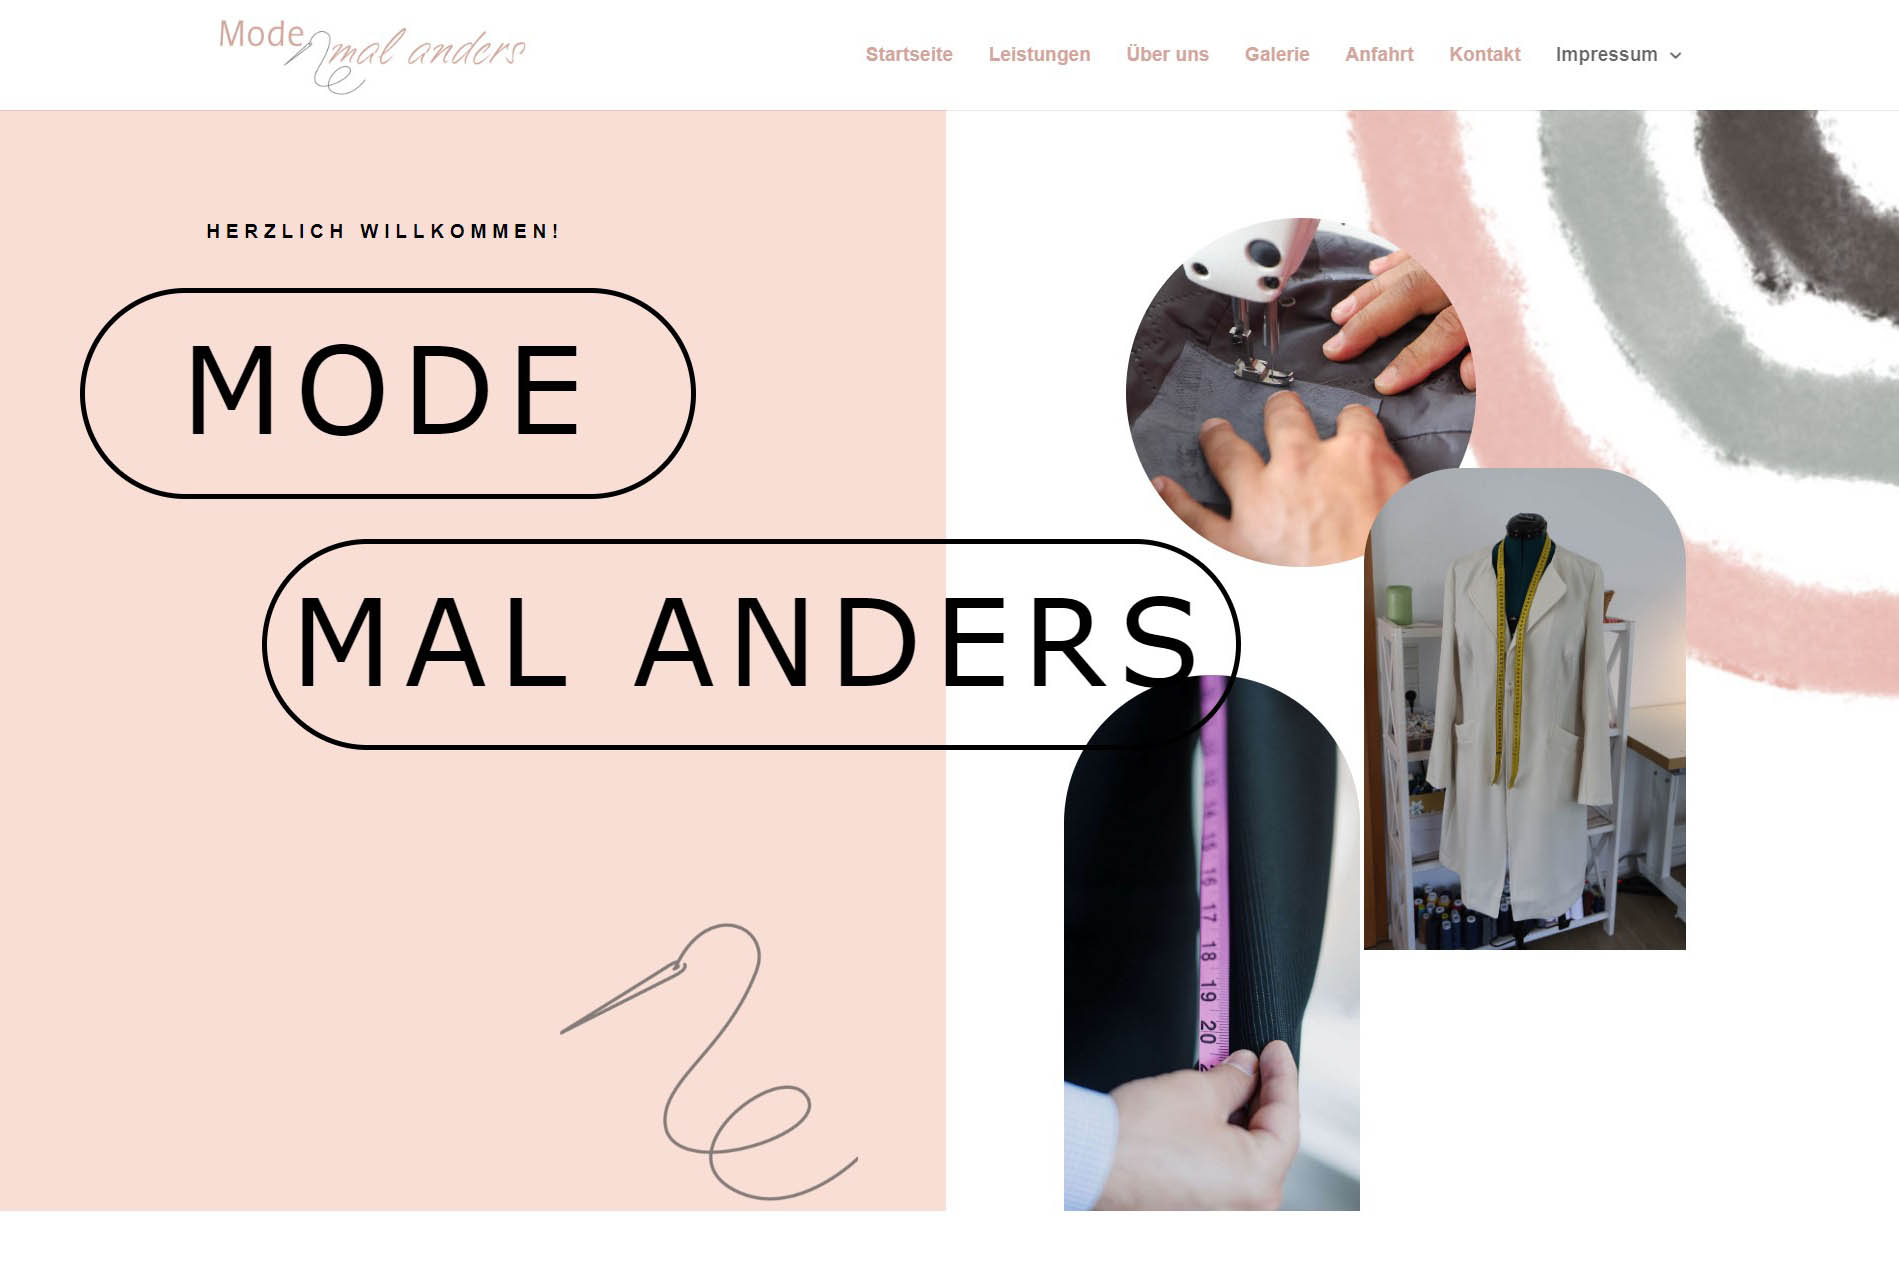 Mode mal anders - eine Website für die kleine Änderungsschneiderei in Dollerup